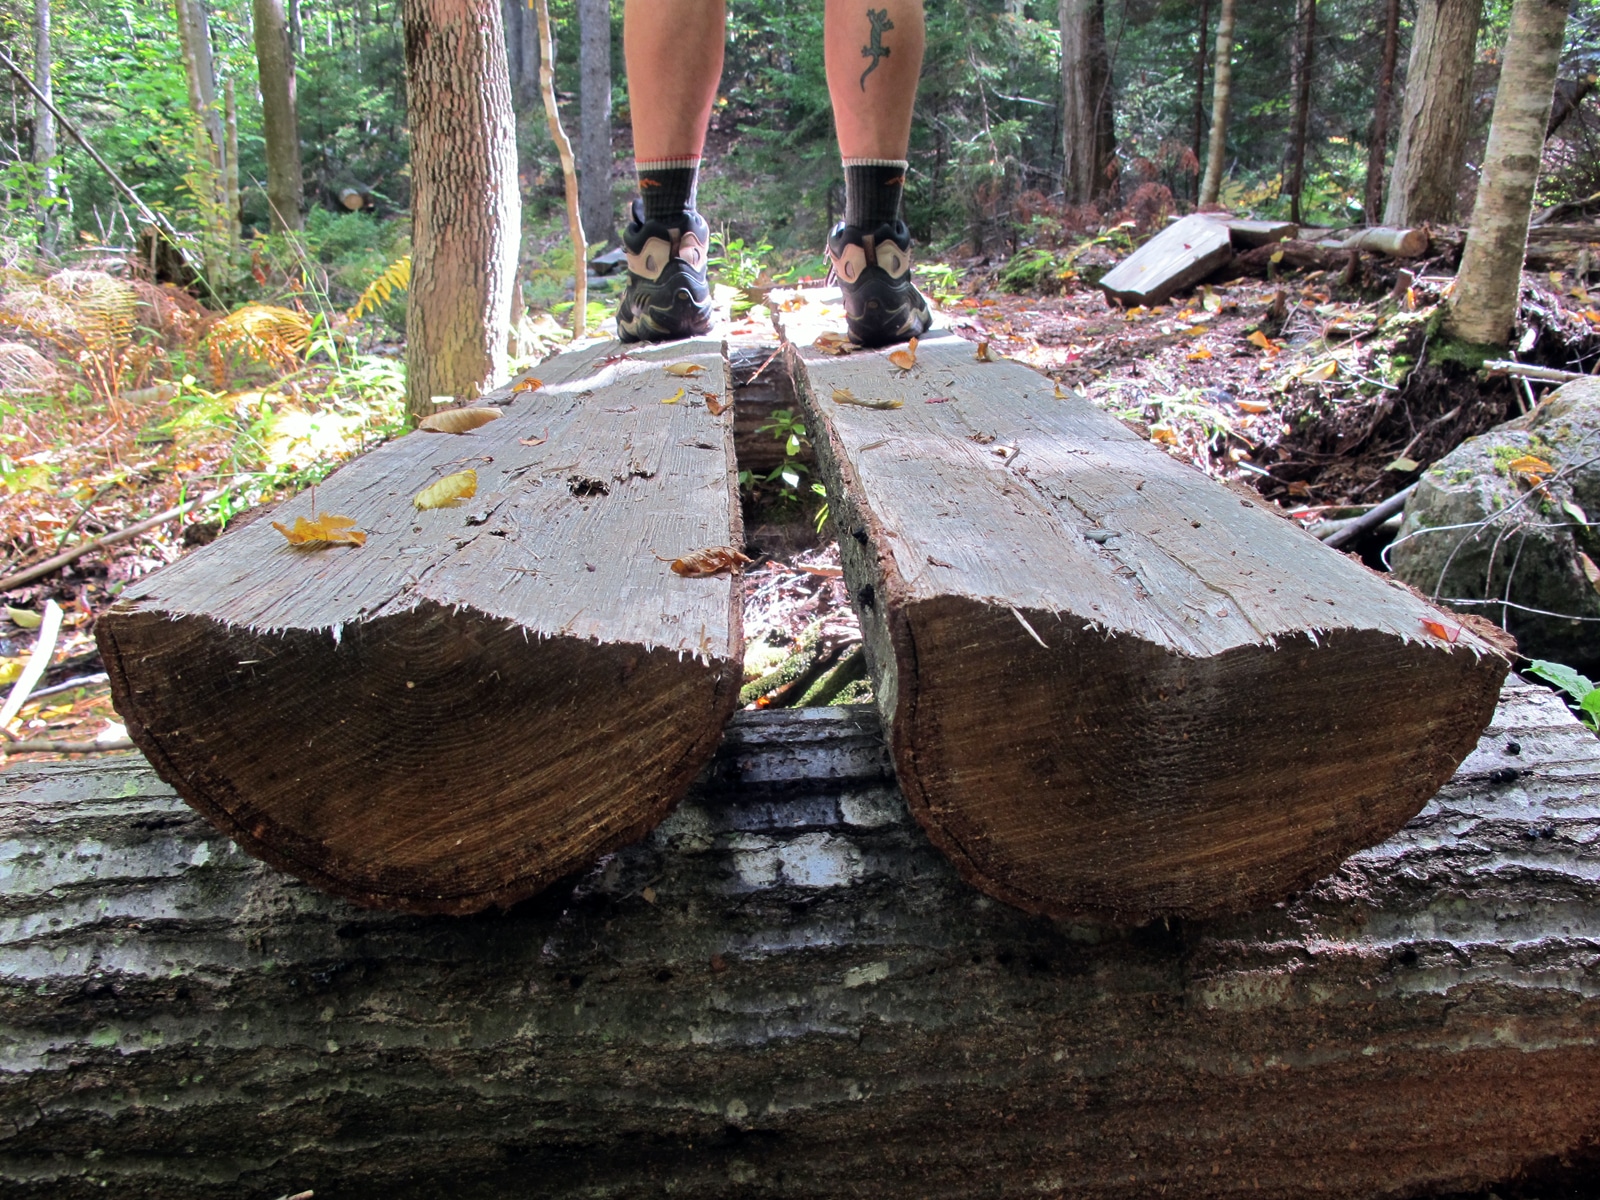 A pair of feet on a wooden footbridge. (photo © Brett Amy Thelen)